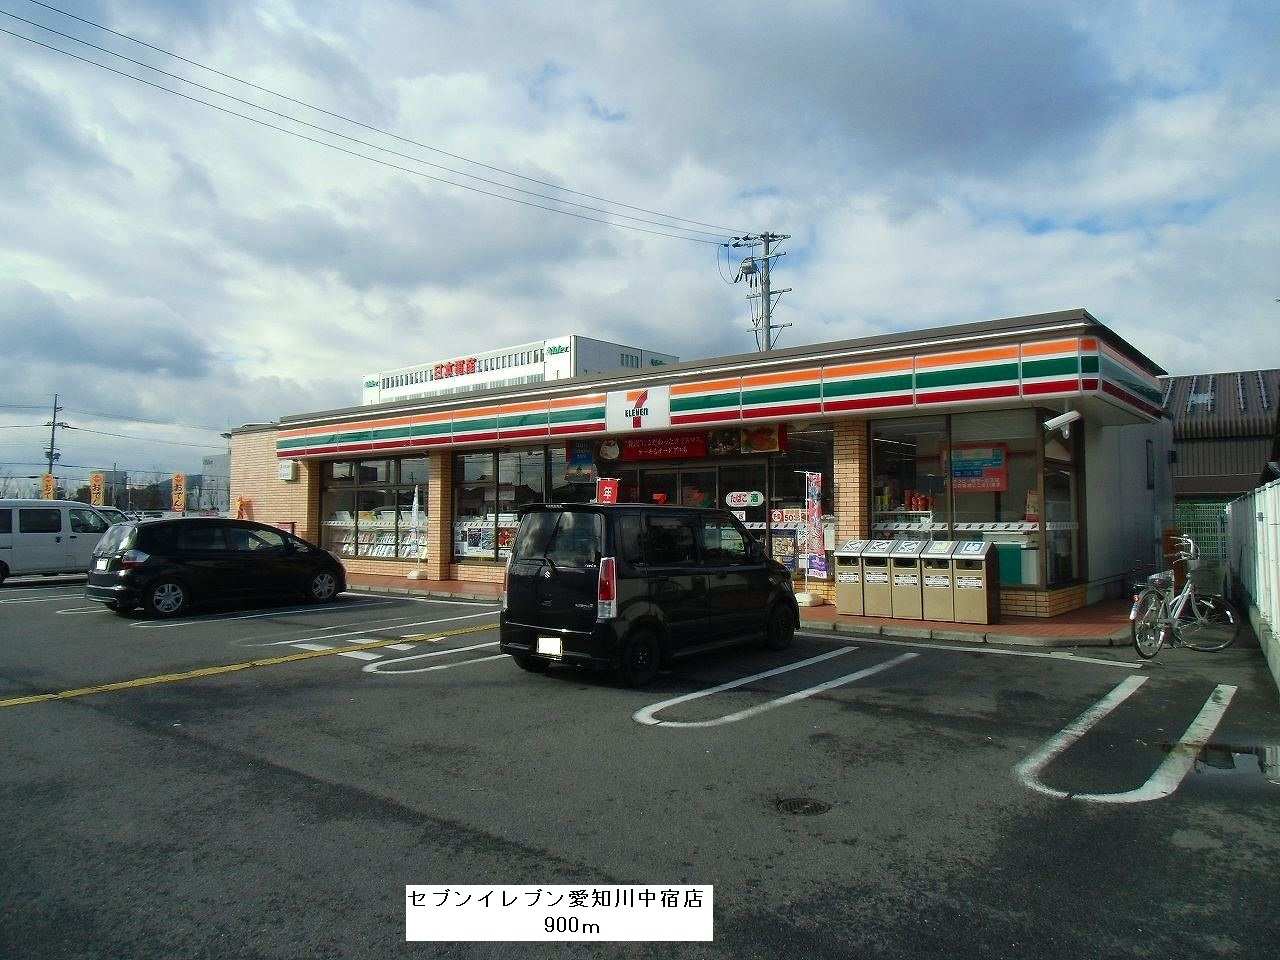 Convenience store. Seven-Eleven Aichi River Nakashuku store up (convenience store) 900m